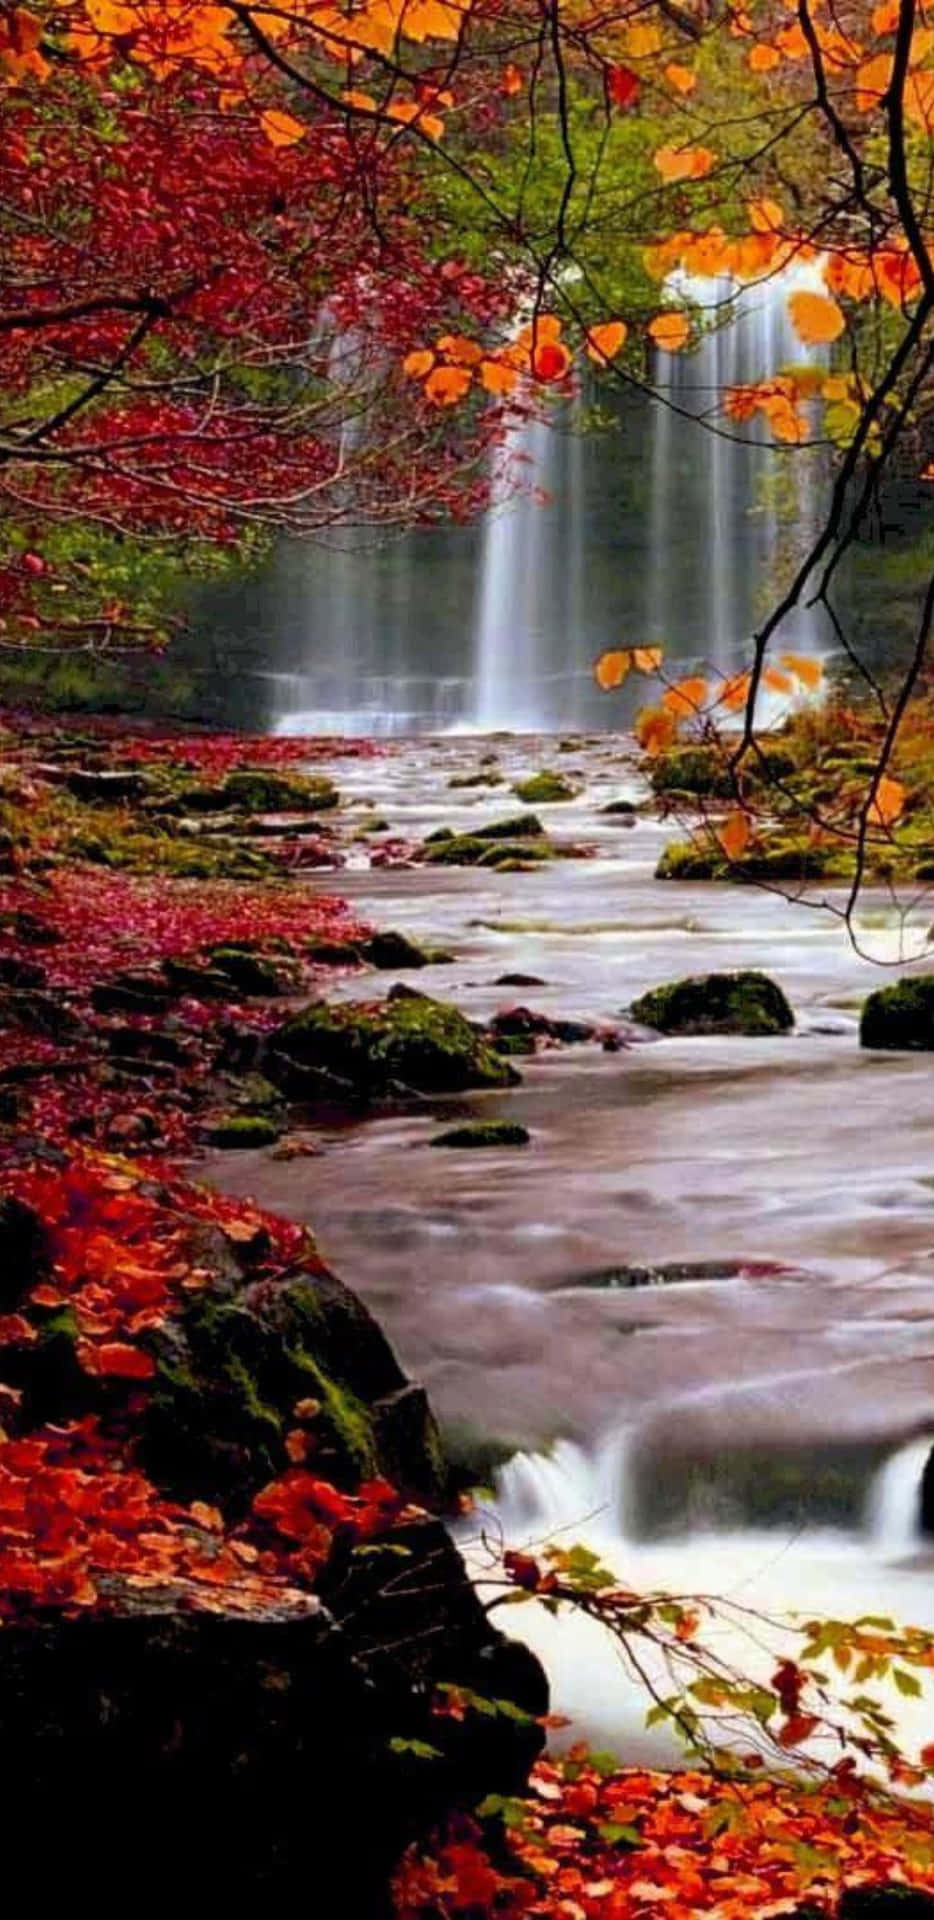 Pixel3xl Herbst Hintergrund Wasserfälle Im Wald